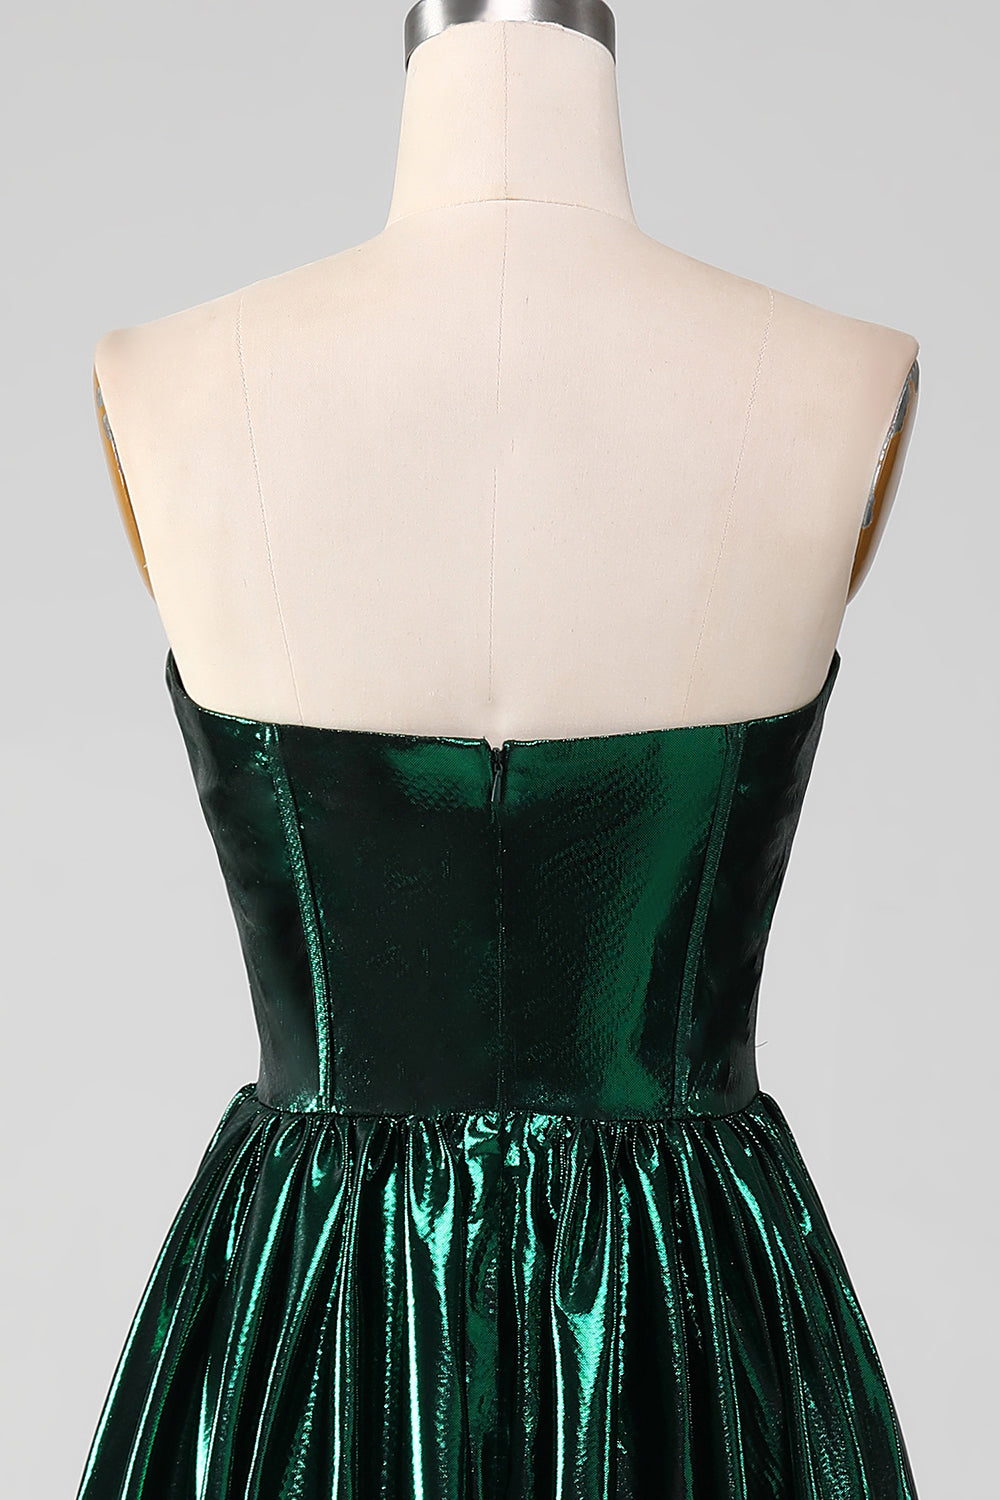 Glitter Dark Green A-Line Sweetheart Corset Metallic Long Prom Dress